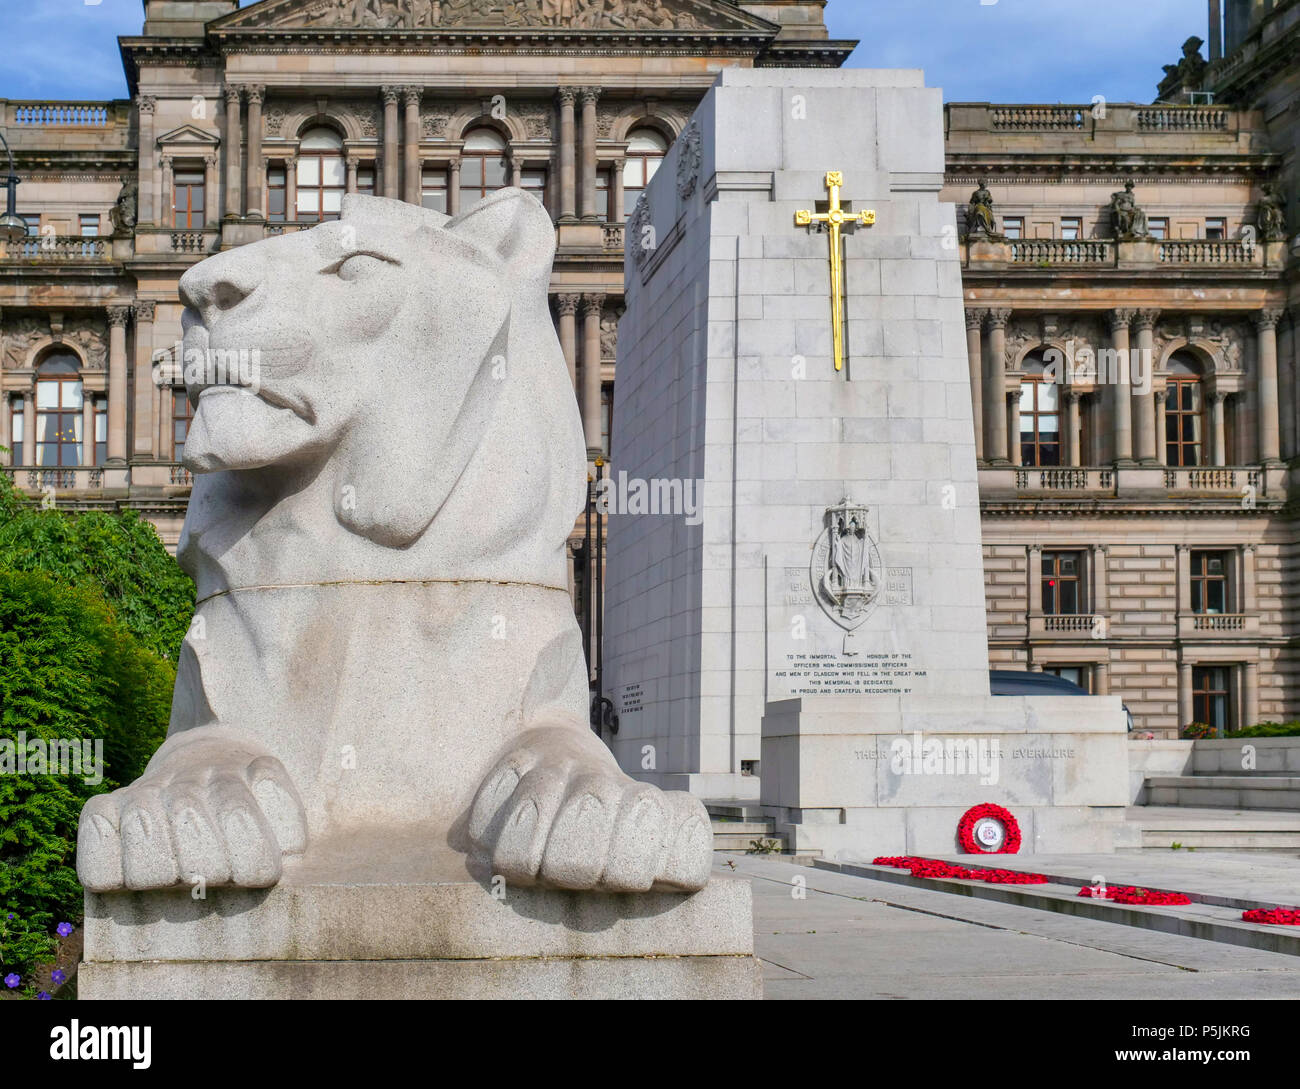 Statue d'un Lion et le cénotaphe à la Glasgow City Chambers derrière, George Square, Glasgow, Ecosse, Royaume-Uni Banque D'Images